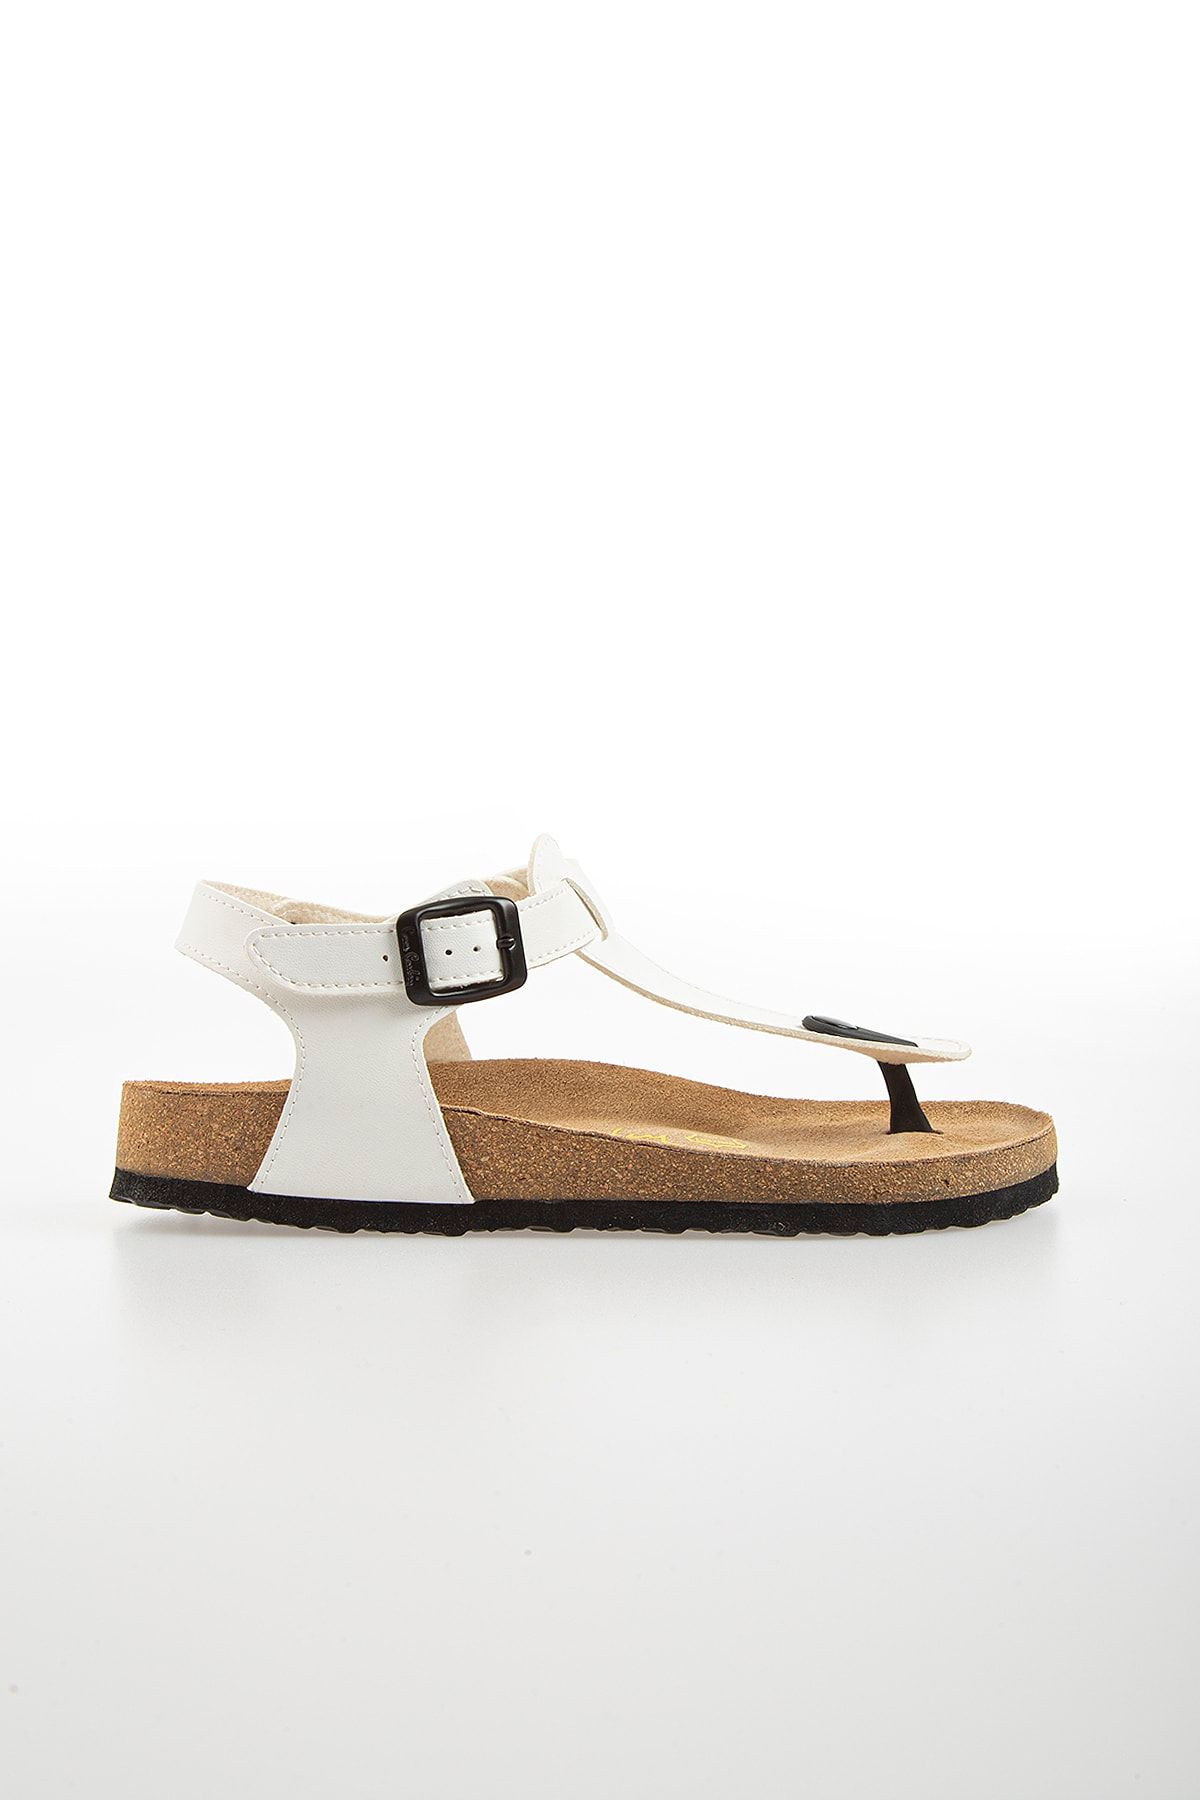 Pierre Cardin Pc-5056 Beyaz Kadın Sandalet